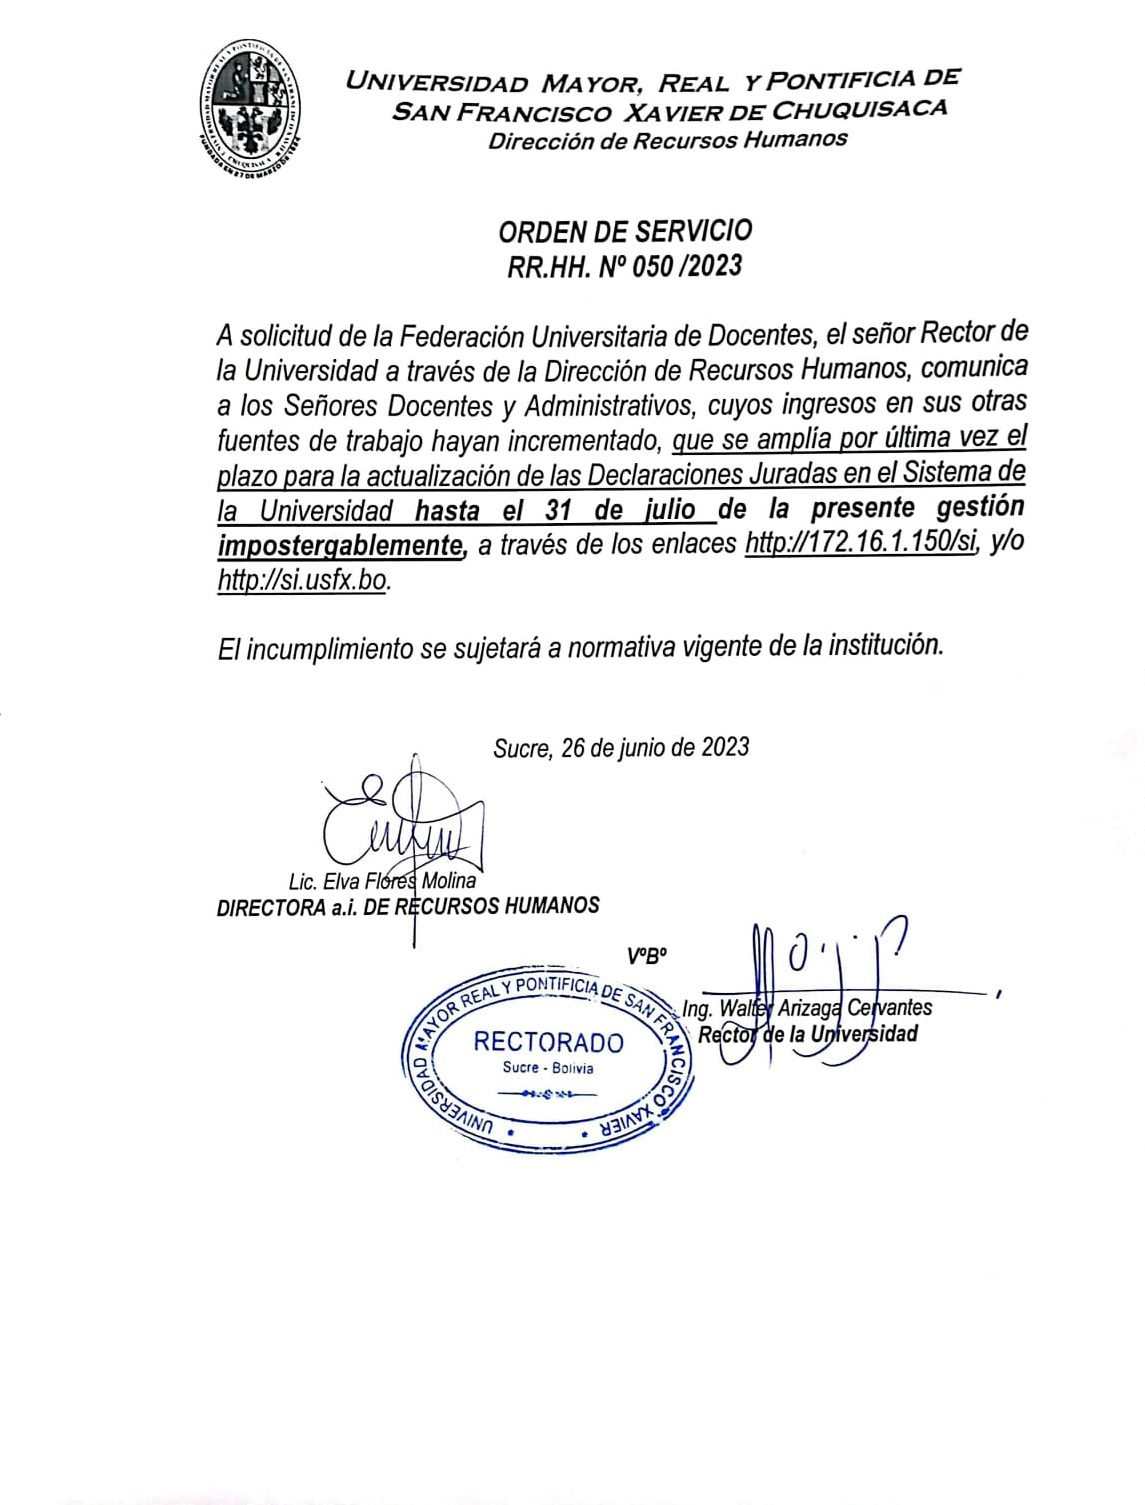 ORDEN DE SERVICIO RR.HH. N° 050/23 AMPLIACIÓN DECLARACIONES JURADAS.